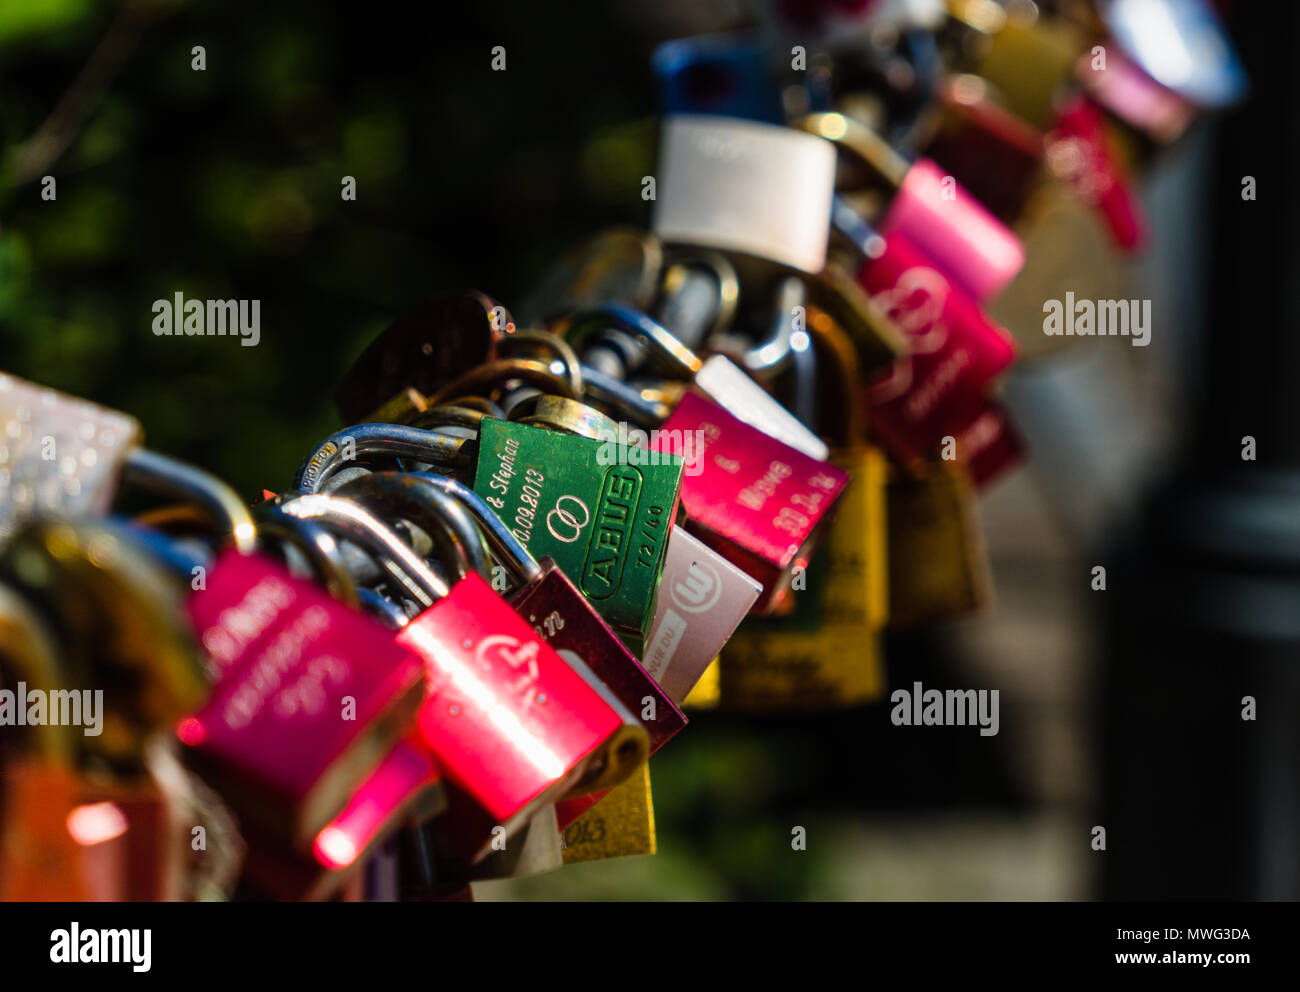 Bloqueado candados con nombres grabados en la cadena de la baranda de un puente, como un signo de amor eterno y lealtad, Wolfsburg, Alemania, mayo de 2018 Foto de stock